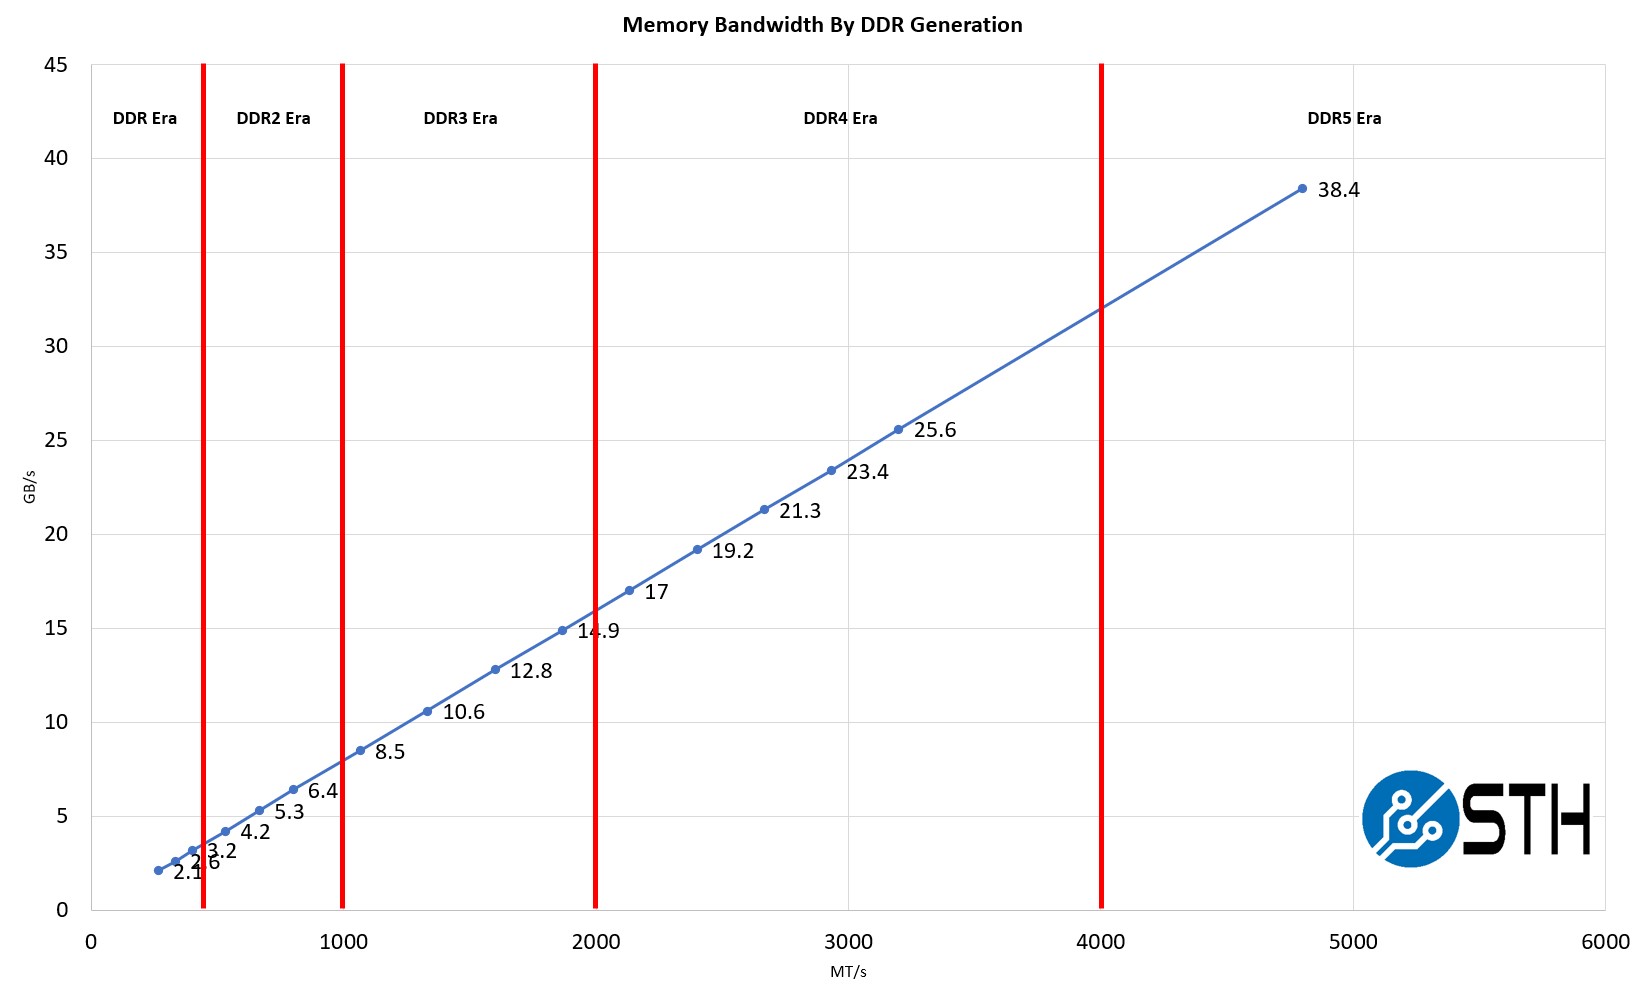 DDR DDR2 DDR3 DDR4 and DDR5 Bandwidth by Generation